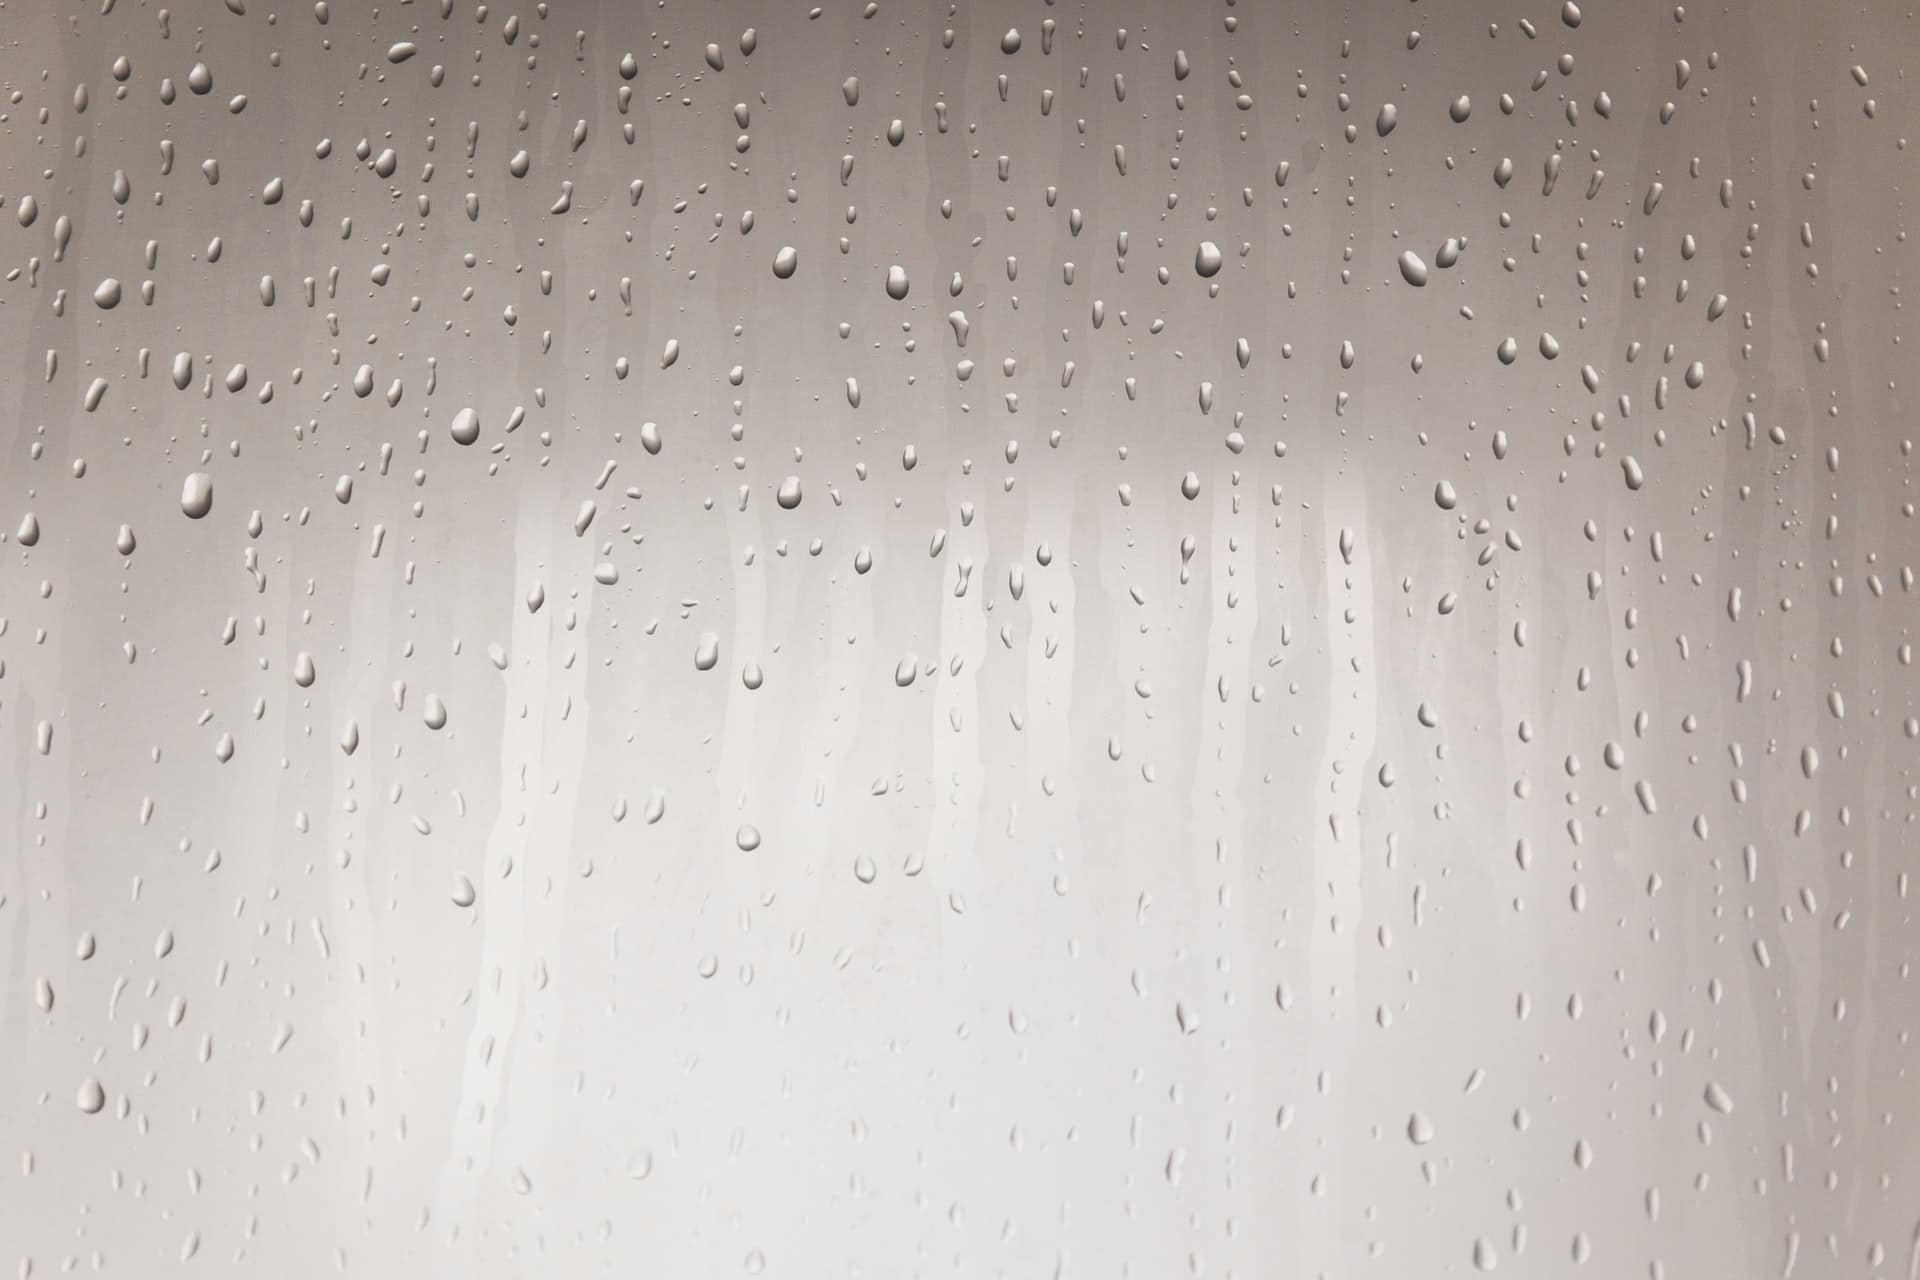 water condensation on glass shower door